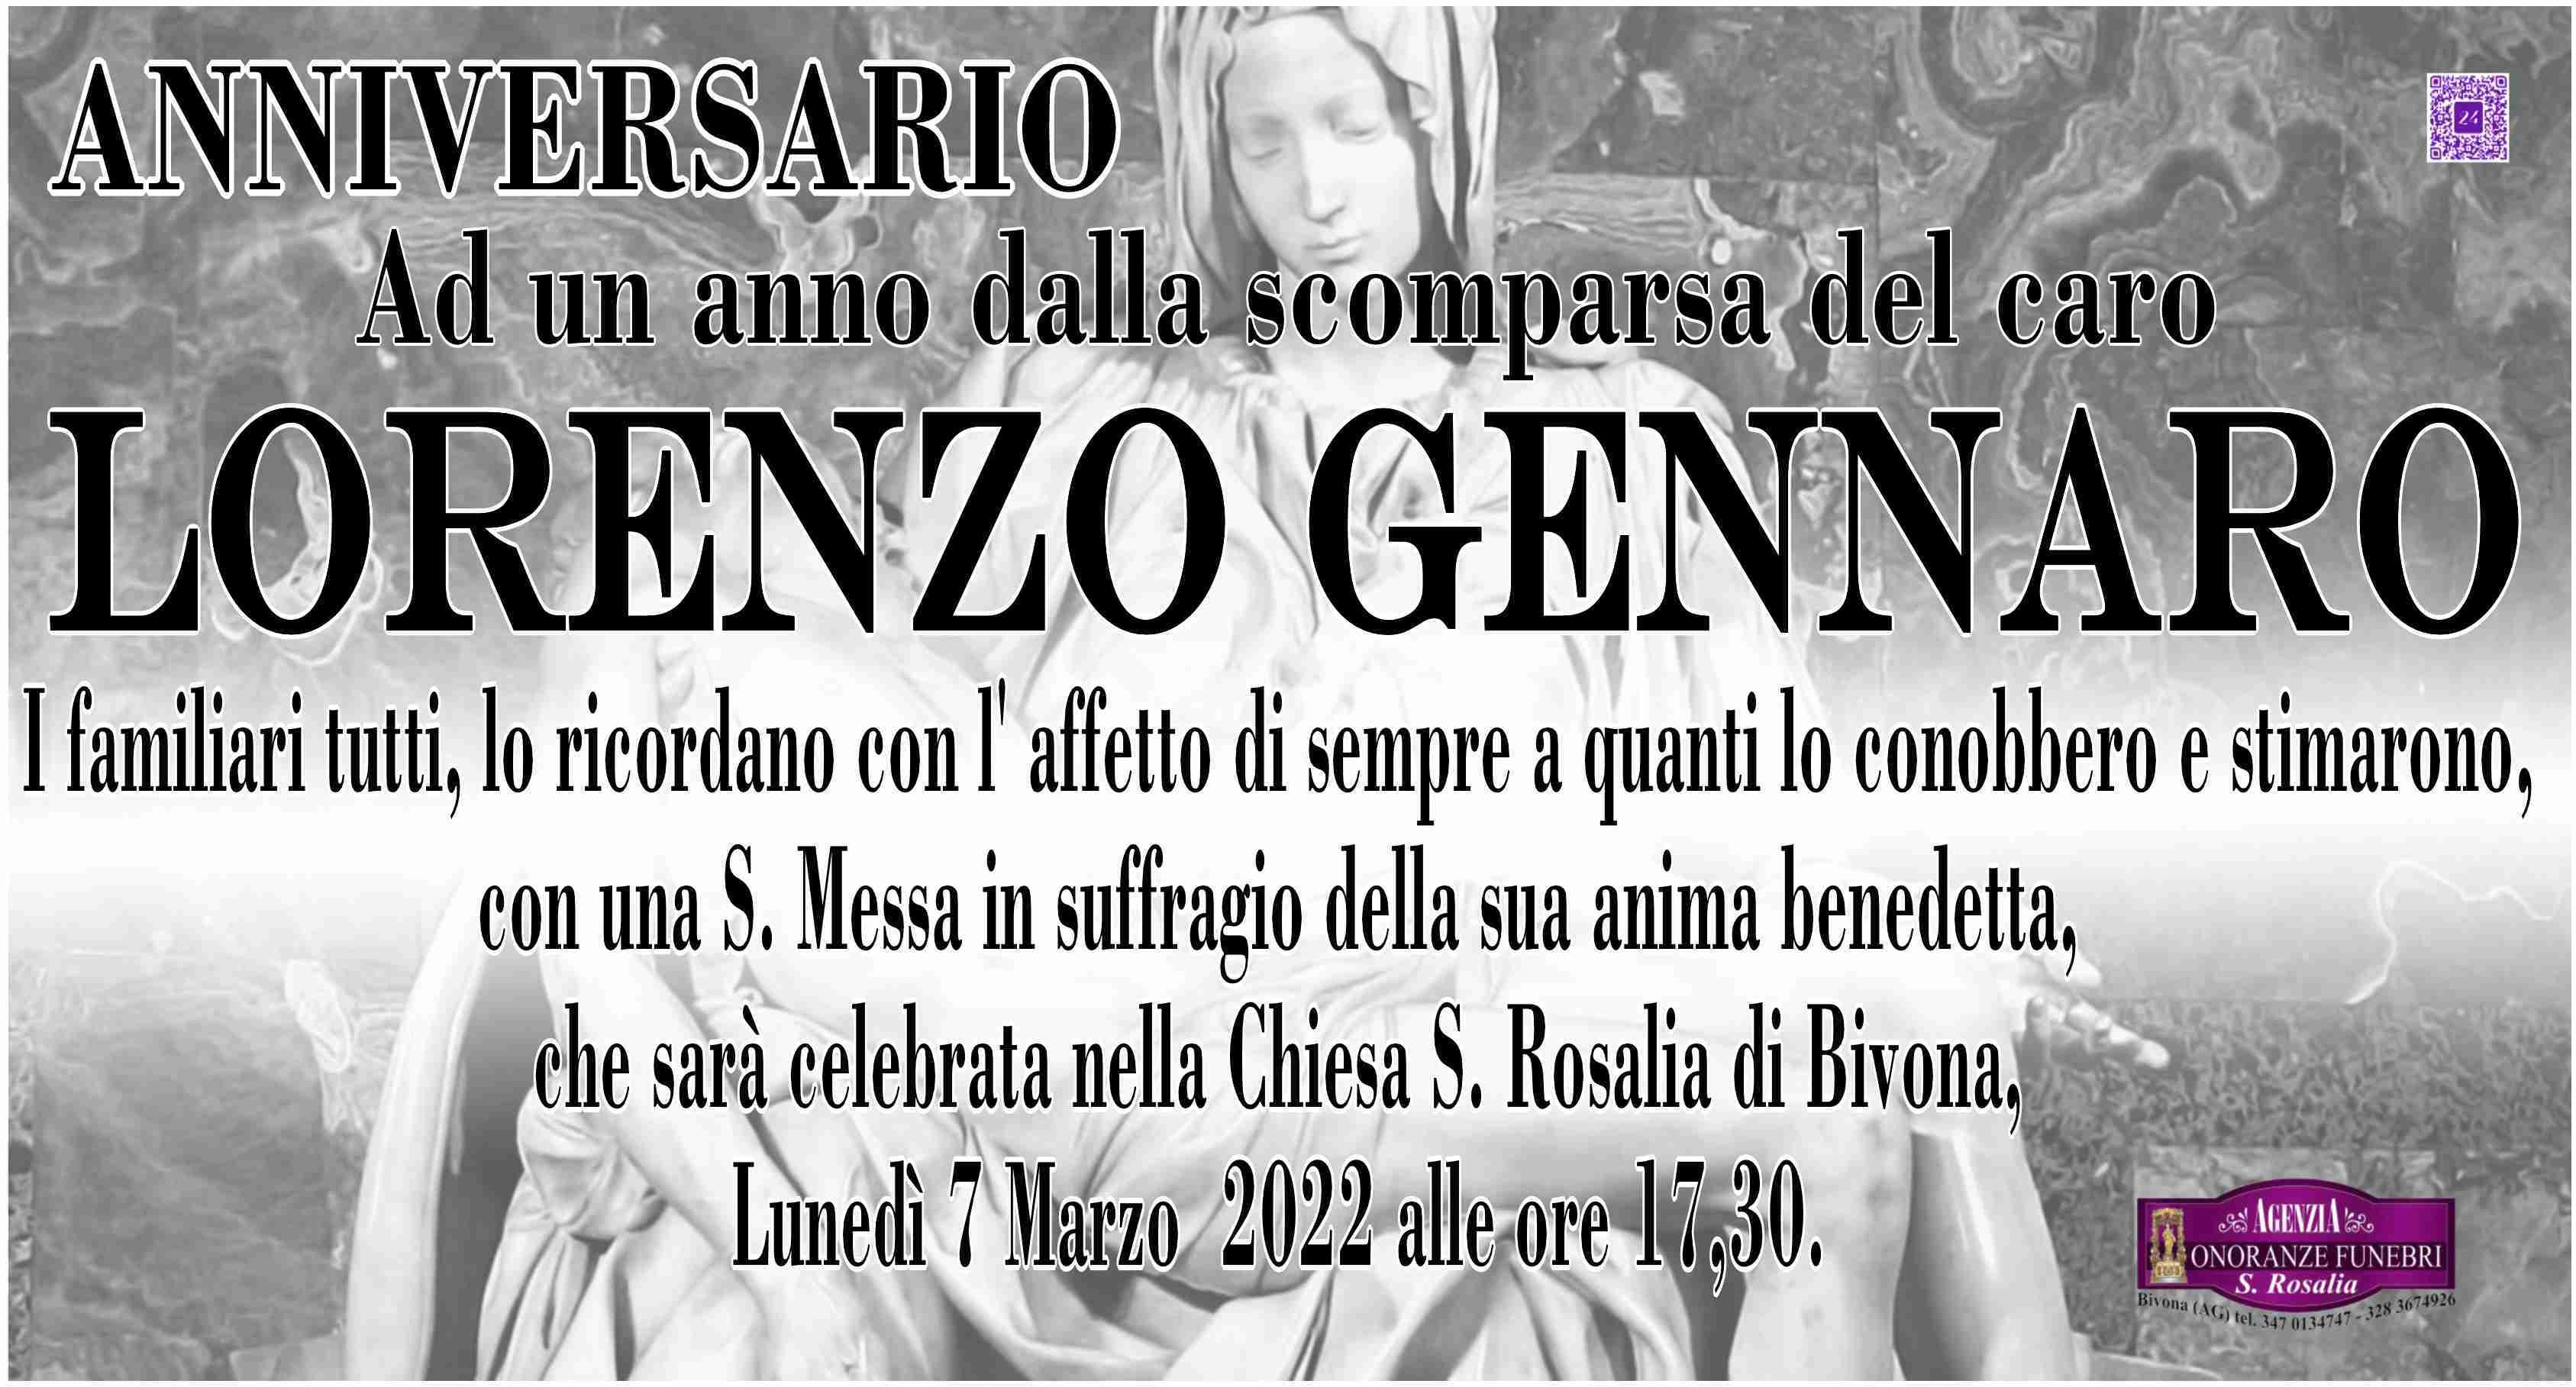 Lorenzo Gennaro